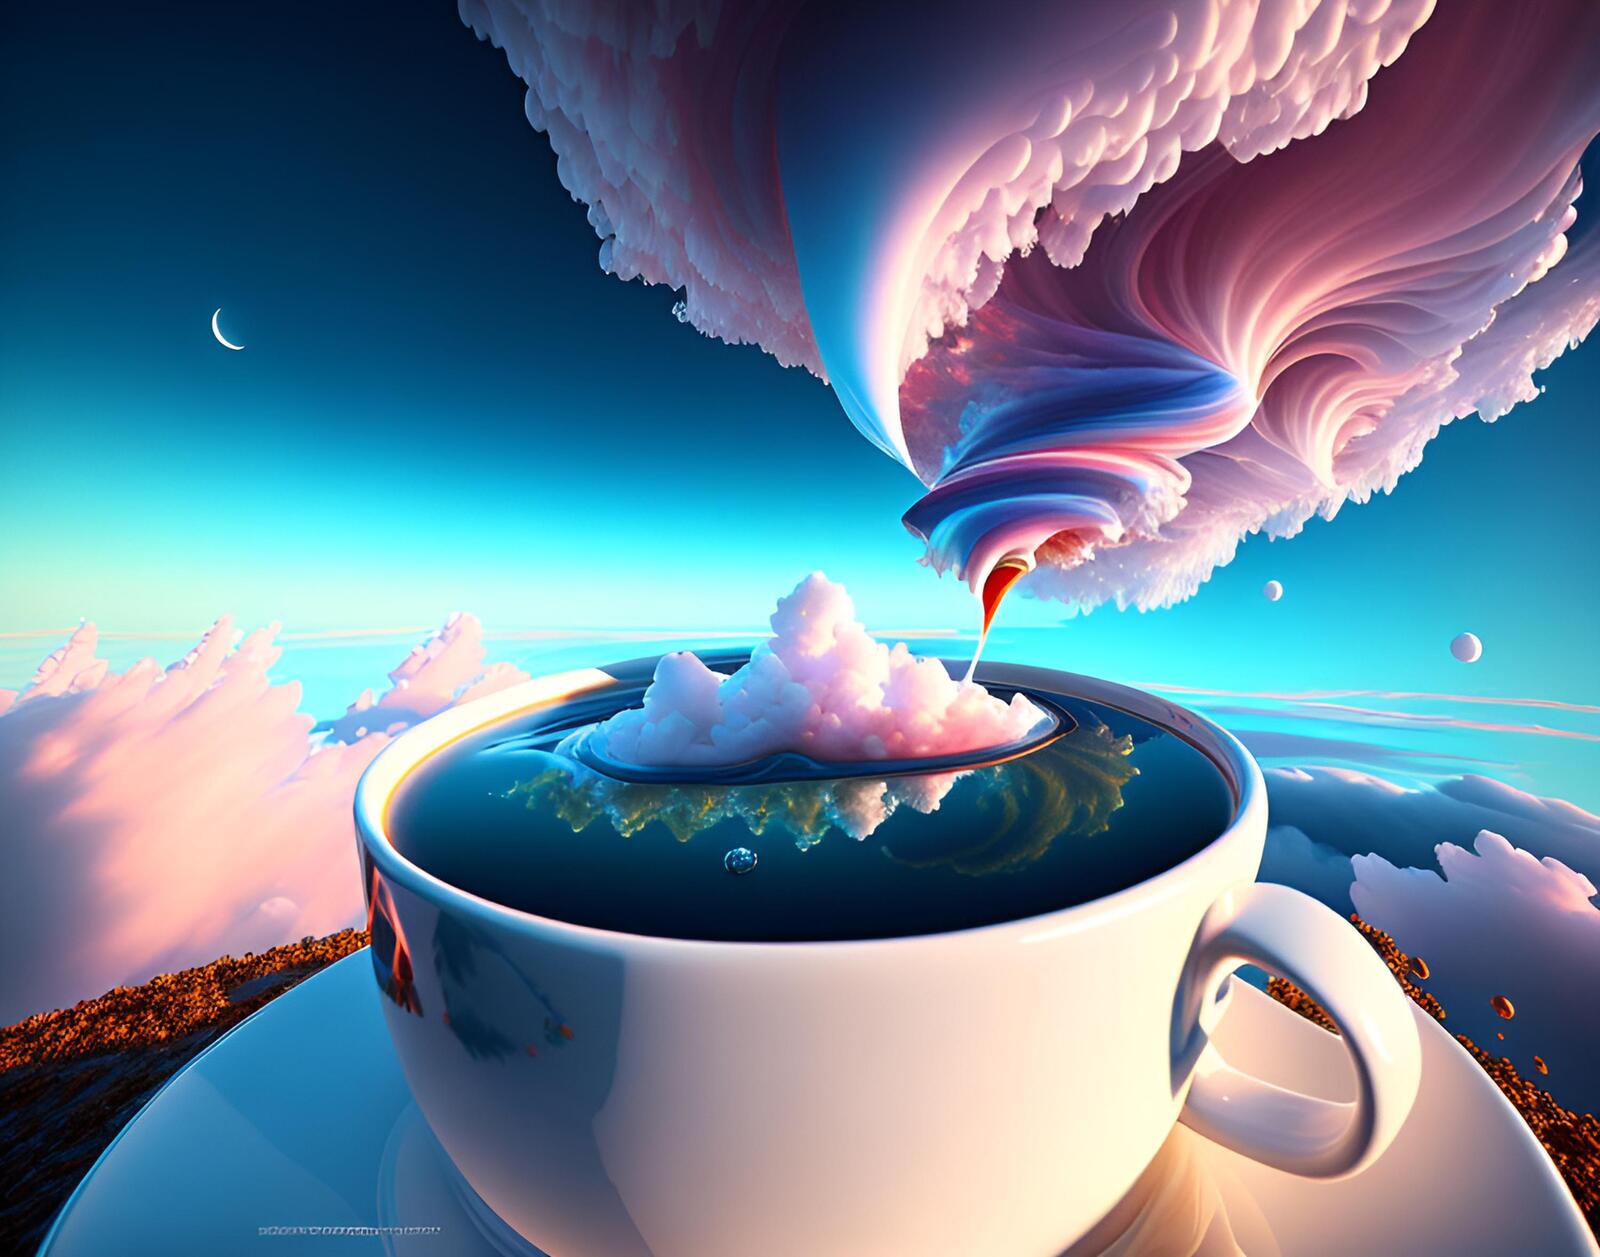 Бесплатное фото Фантастическая чашка ураган